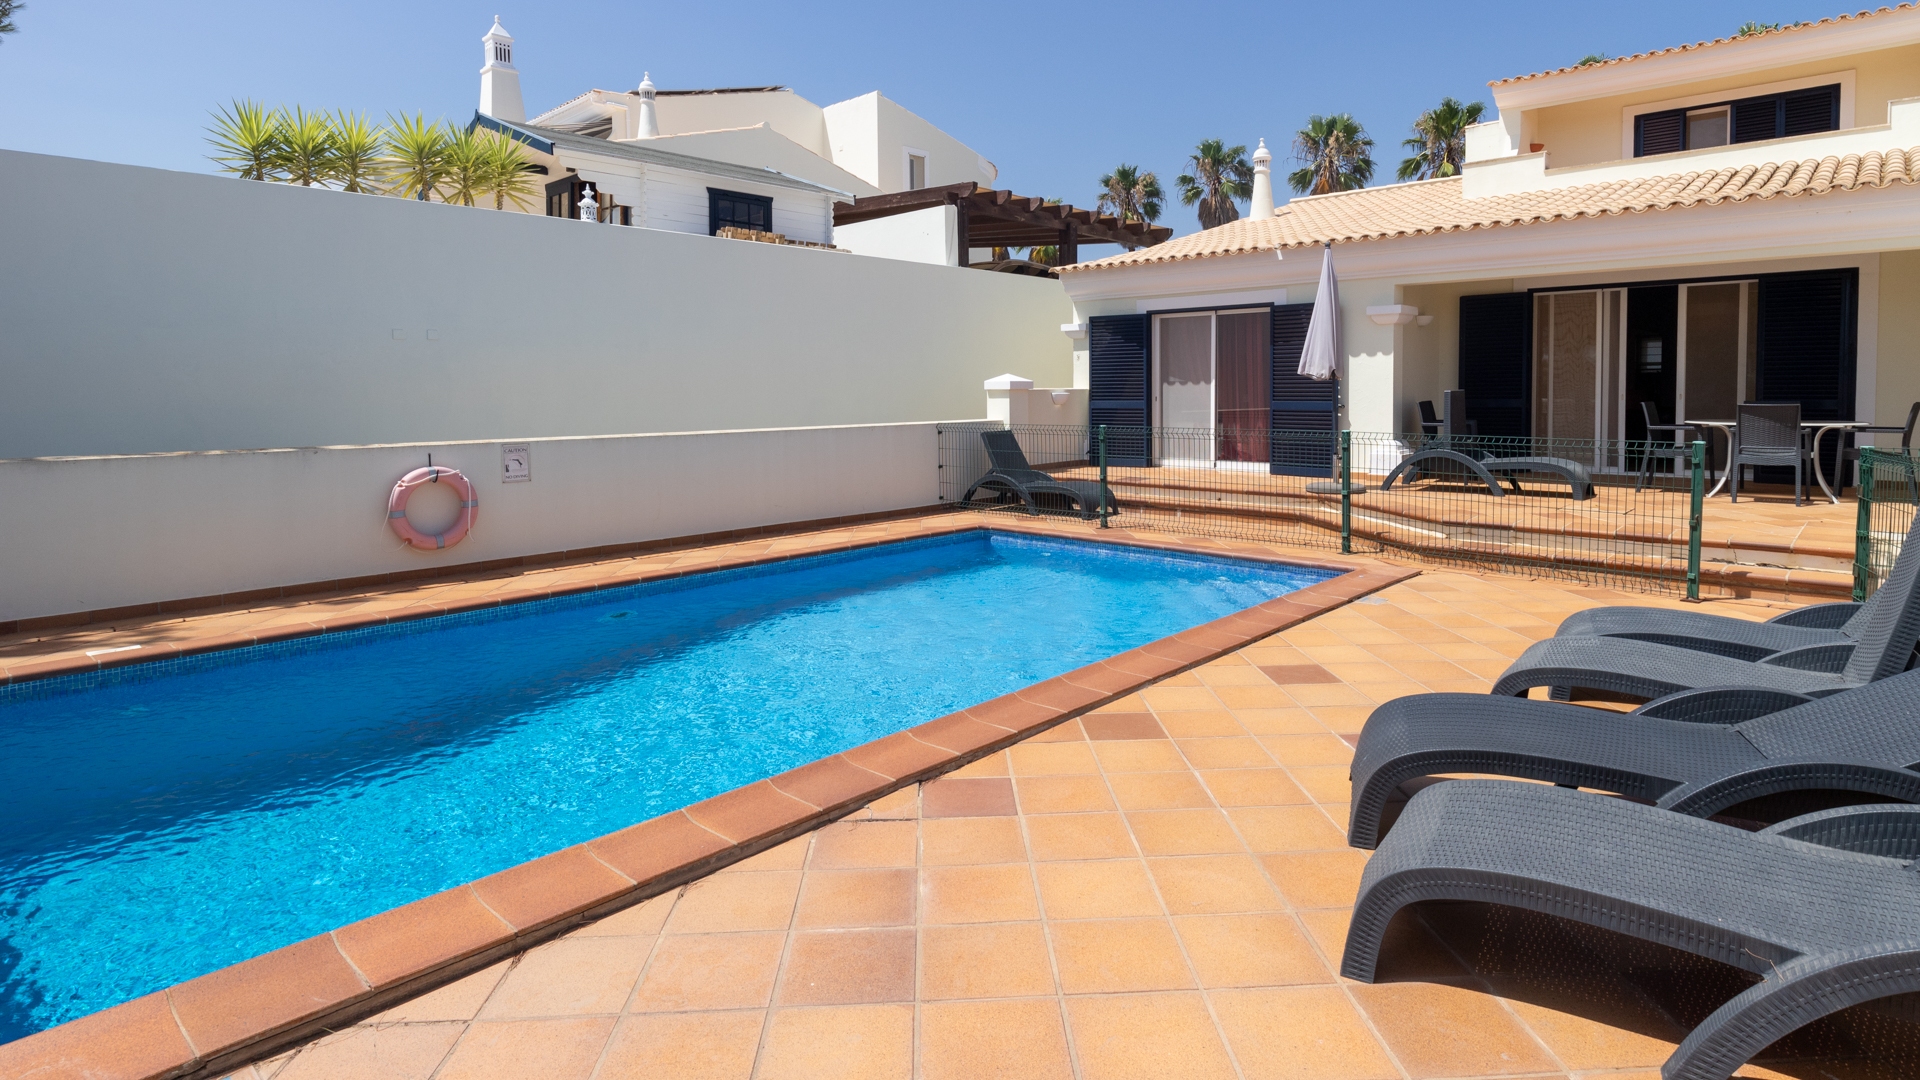 Spacieuse maison jumelée sur un terrain de golf à Castro Marim, Algarve de l'Est | TV2136 Possibilité d'acheter une immense et belle maison jumelée au complexe de golf de Castro Marim dans l'est de l'Algarve. La propriété bénéficie d'une vue panoramique et est proche de la frontière espagnole.